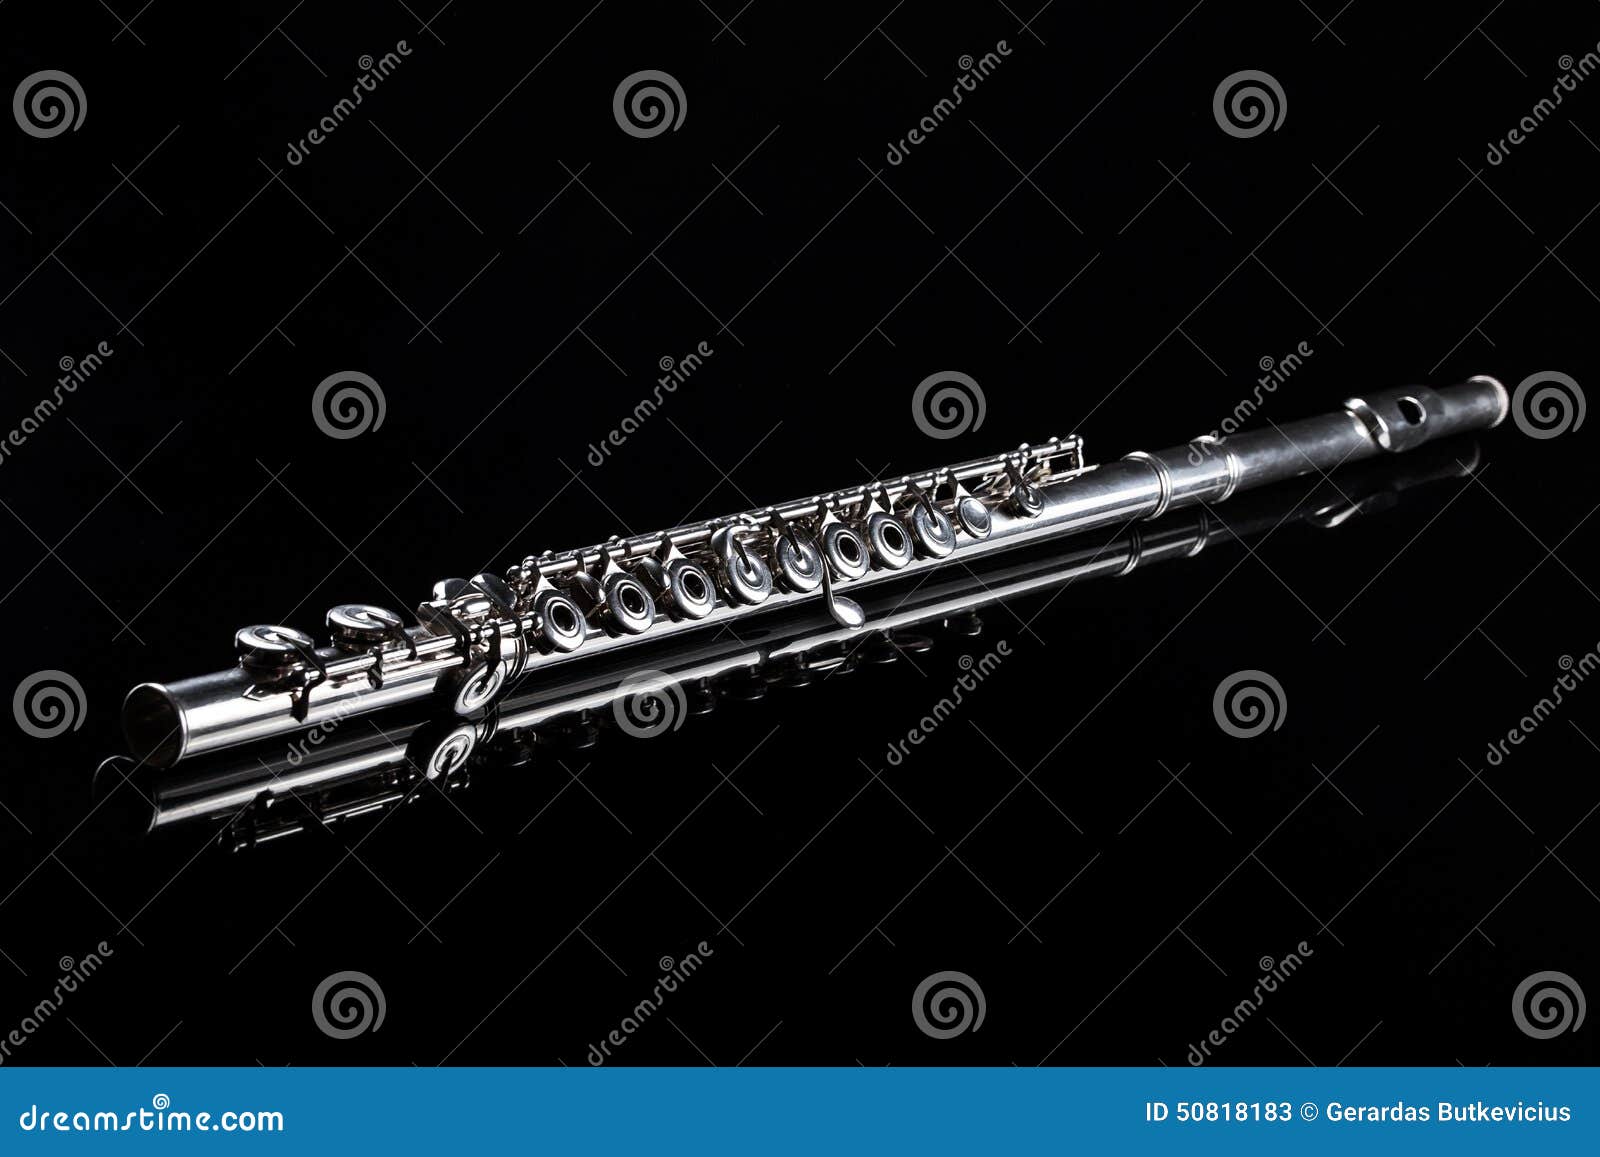 Flute on black background stock image. Image of macro - 50818183